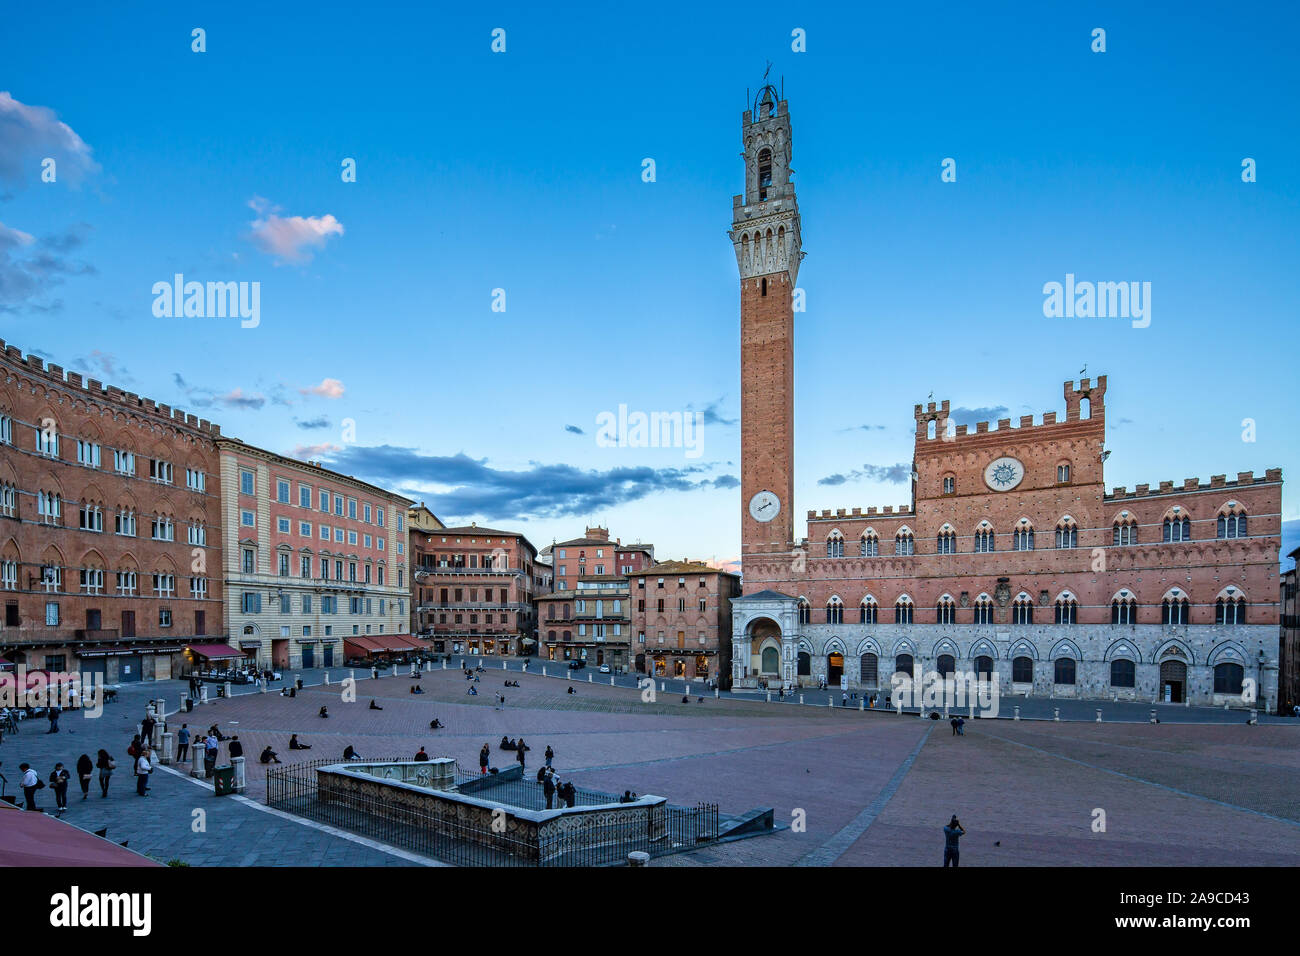 Vista panorámica de la famosa Piazza del Campo, el Palazzo Pubblico y la Torre del Mangia en Siena al atardecer, Toscana, Italia Foto de stock